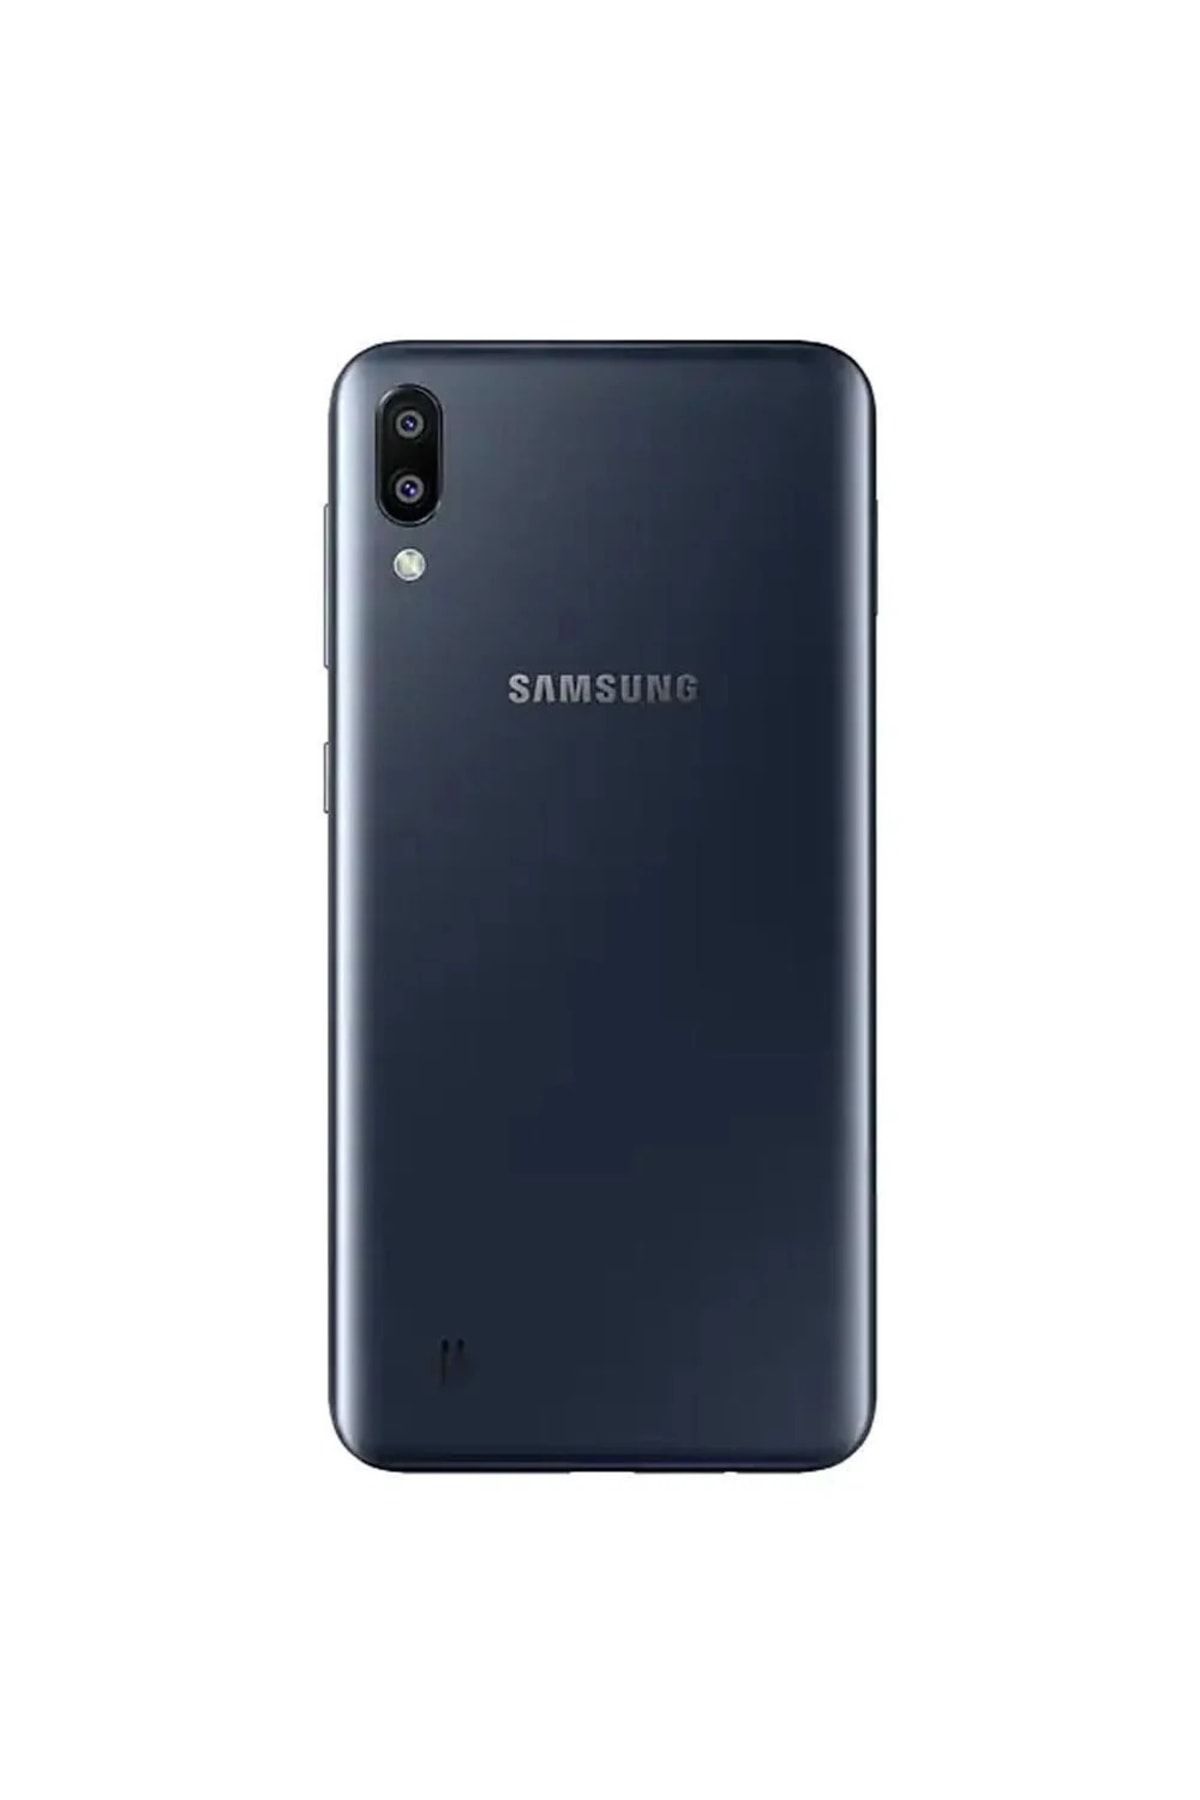 Samsung Yenilenmiş Galaxy M10 Black 16GB B Grade 12 Ay Garantili